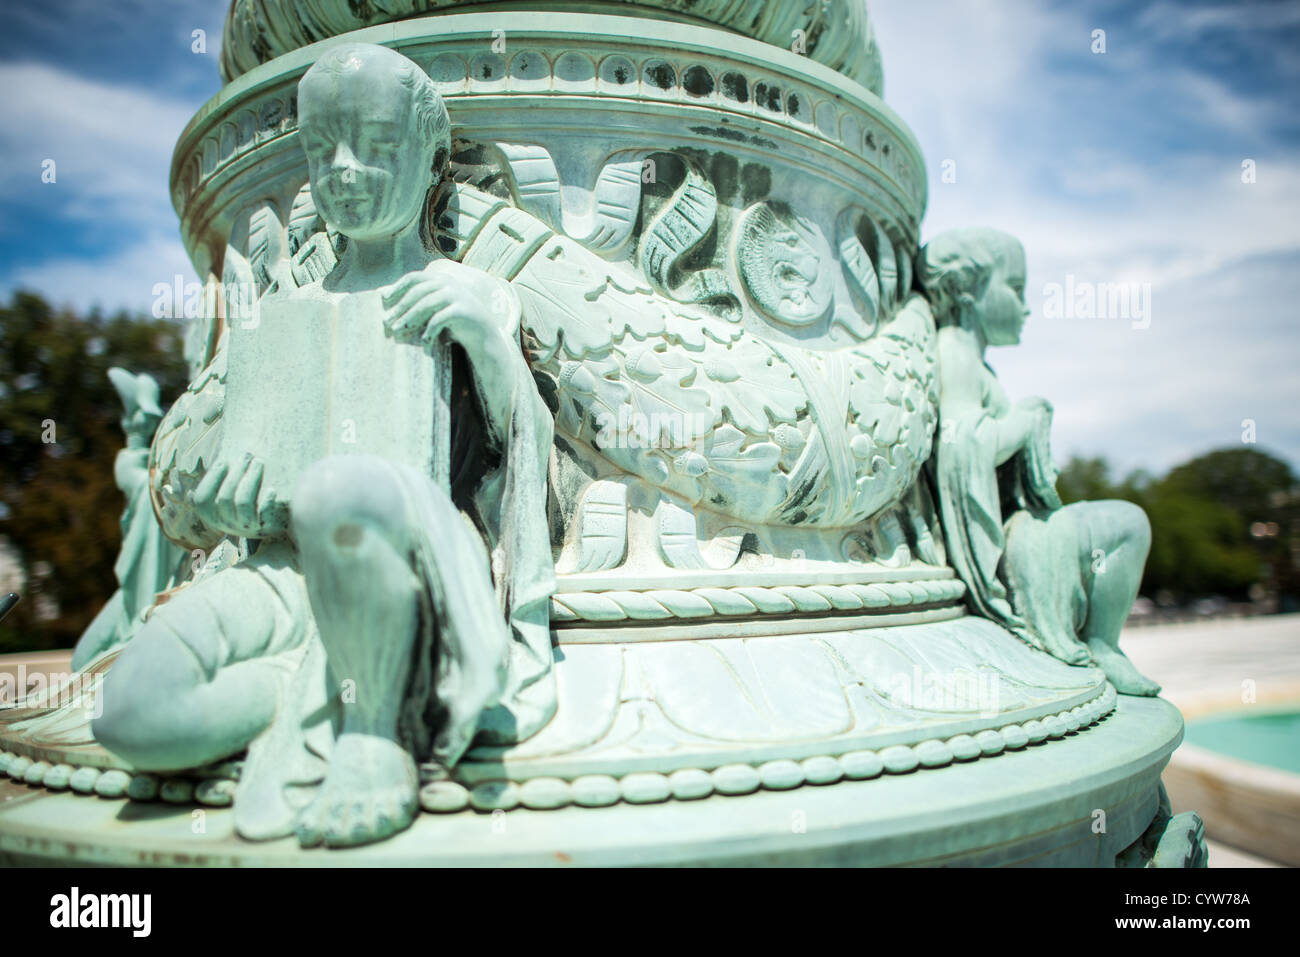 WASHINGTON DC, USA - Höchstes Gericht Flag Pole Skulptur. Dekorative Skulpturen von Putten, die Symbolik im Zusammenhang mit Gerechtigkeit auf der Basis eines der fahnenmasten stehen auf der Plaza vor dem Obersten Gerichtshof der Vereinigten Staaten, Gebäude auf dem Capitol Hill. Stockfoto